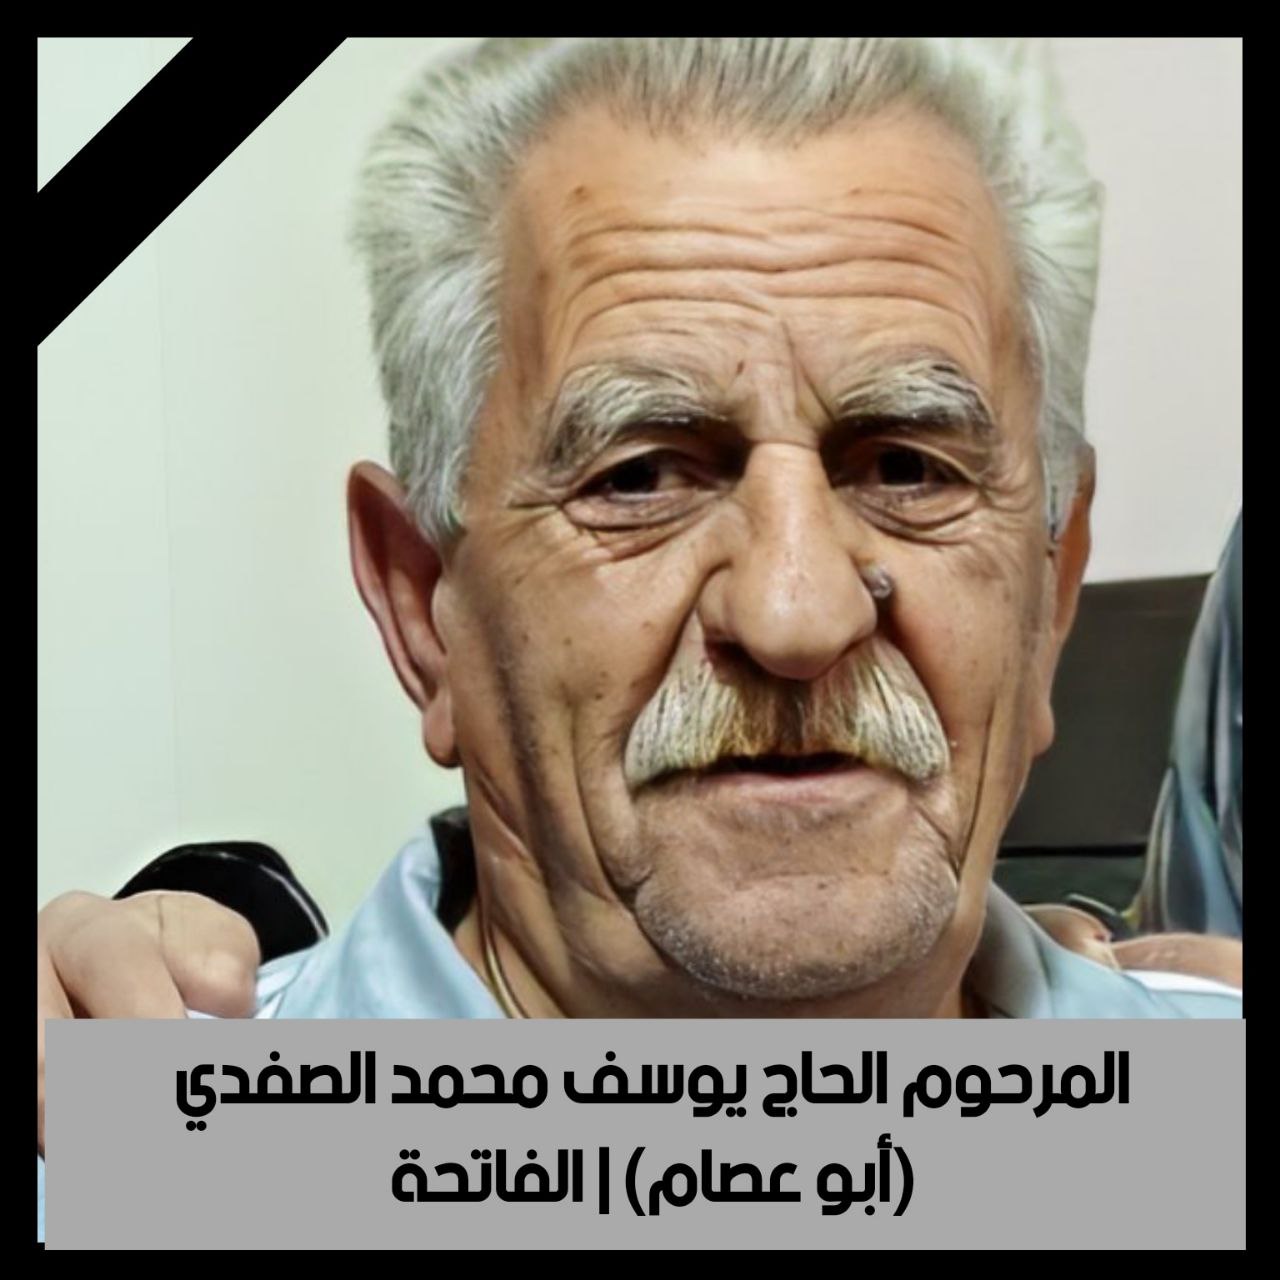 وفاة الحاج يوسف محمد الصفدي(أبو عصام)